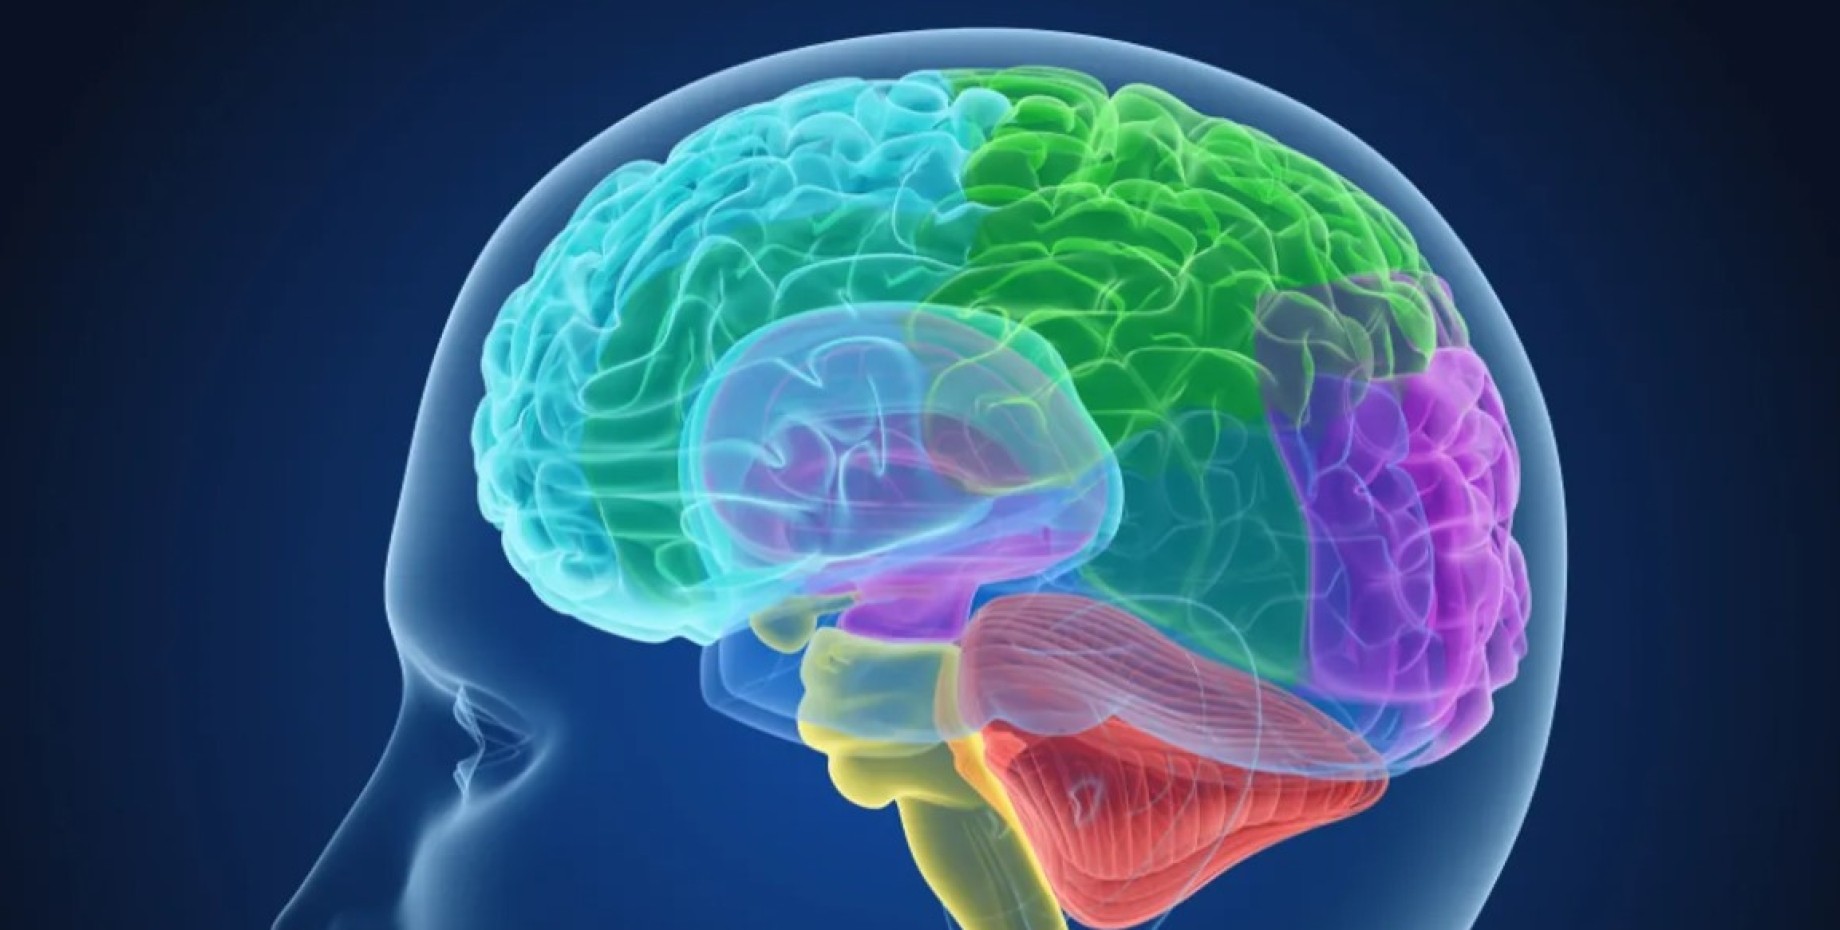 Brain 259. Головной мозг. Изображение мозга.